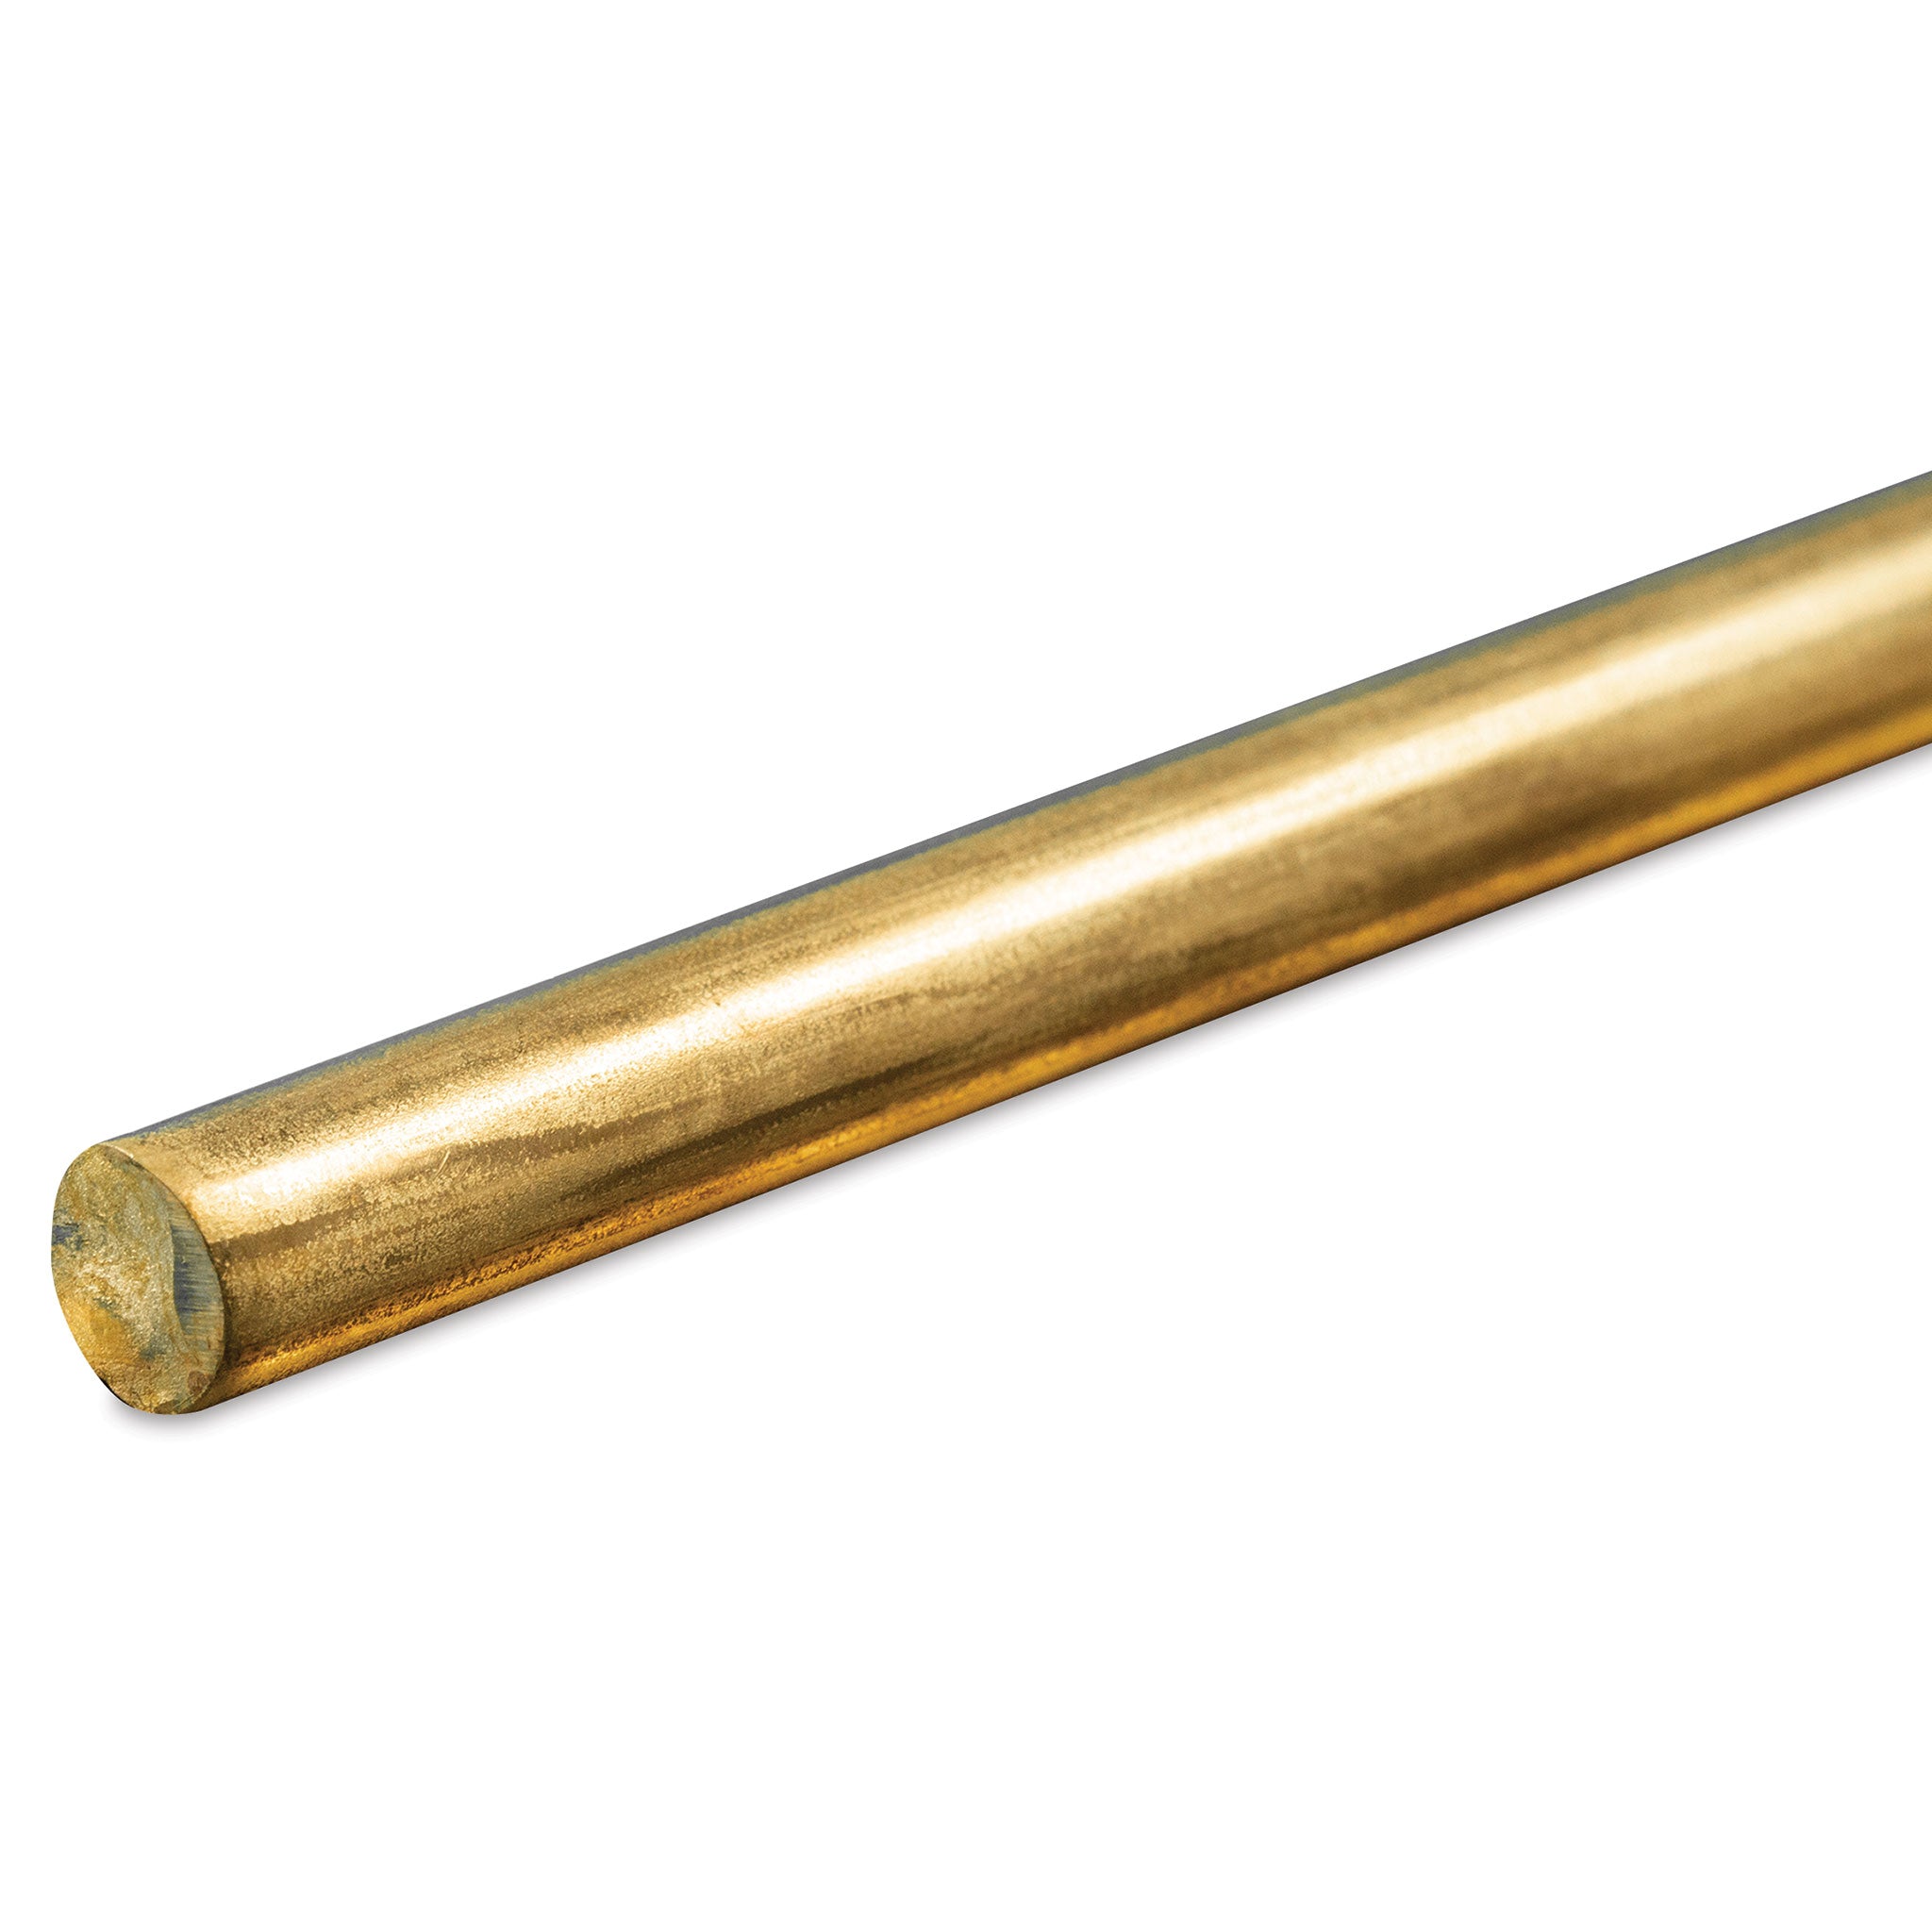 K&S Metals 1166 Round Brass Rod 5/16" OD x 36" Long (1 Piece)